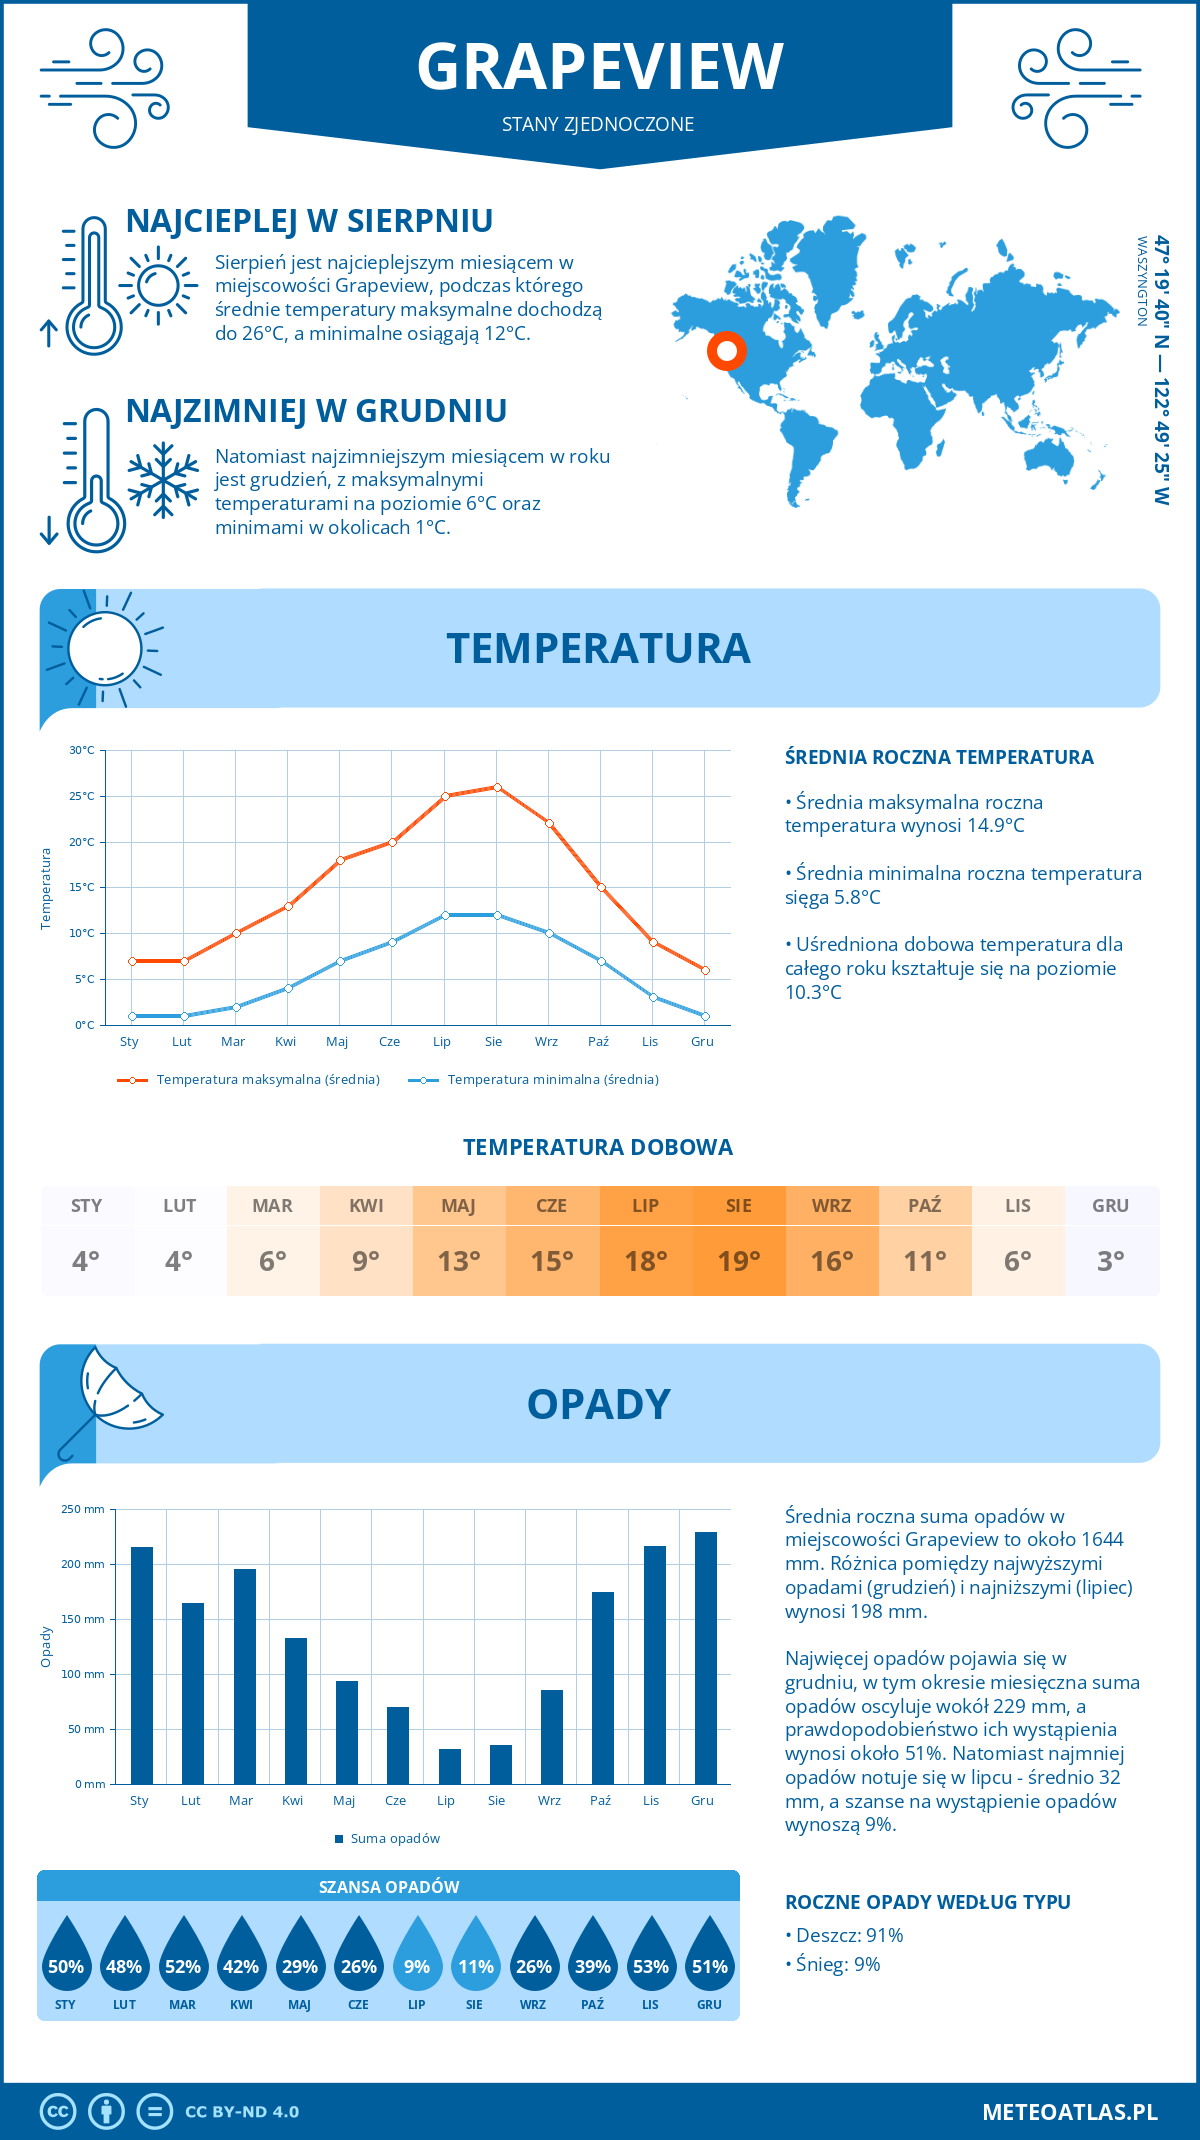 Pogoda Grapeview (Stany Zjednoczone). Temperatura oraz opady.